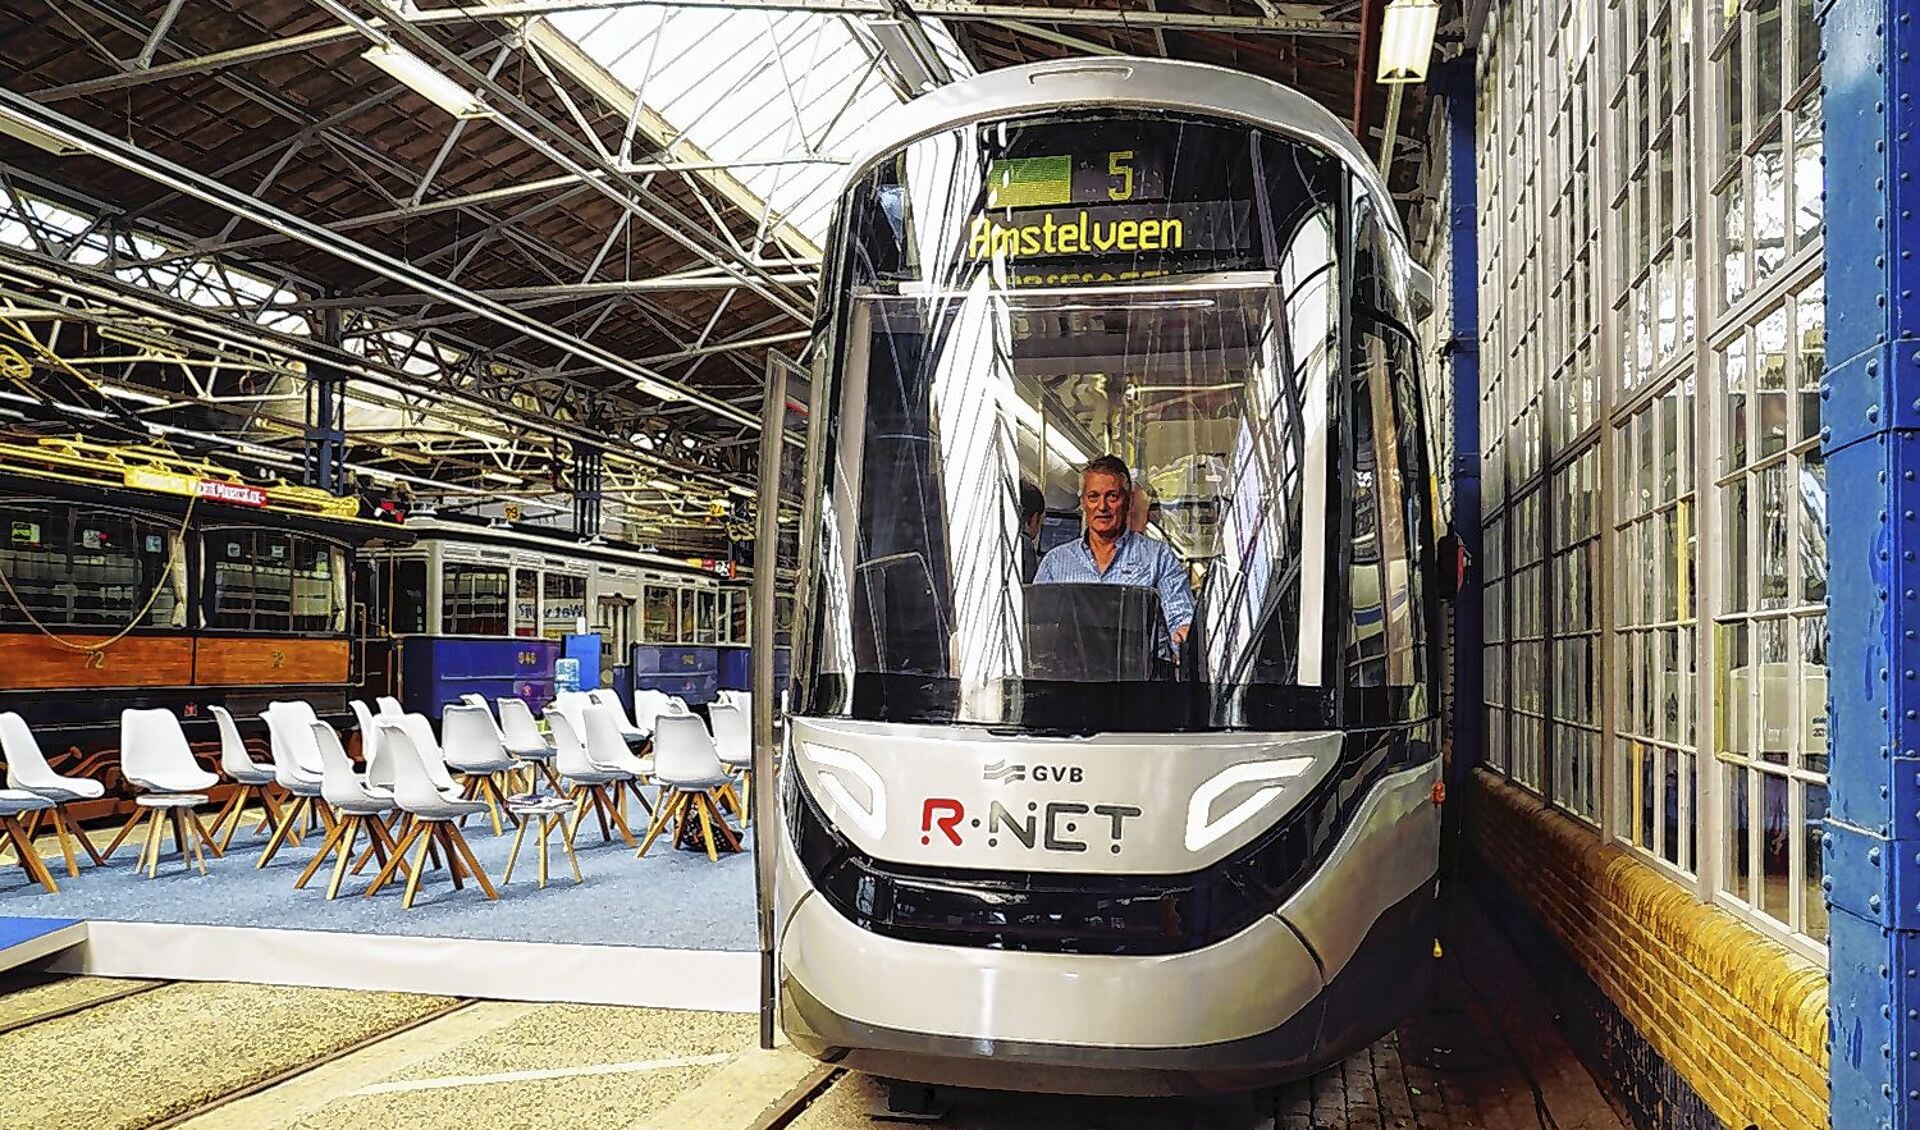 De nieuwe tram die straks op de Amstelveenlijn wordt ingezet.